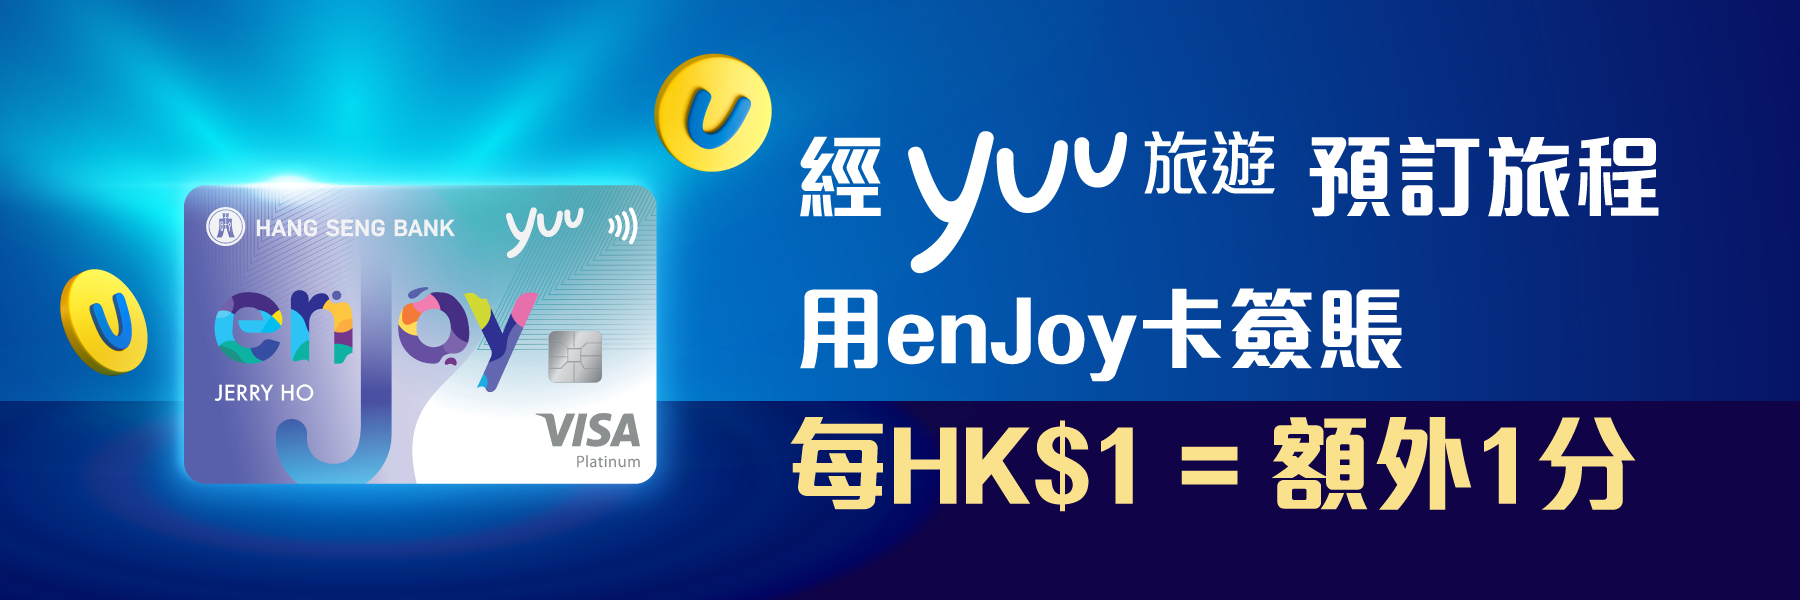 經yuu 旅遊預訂旅程用enJoy 卡簽賬每HK$1=額外1分